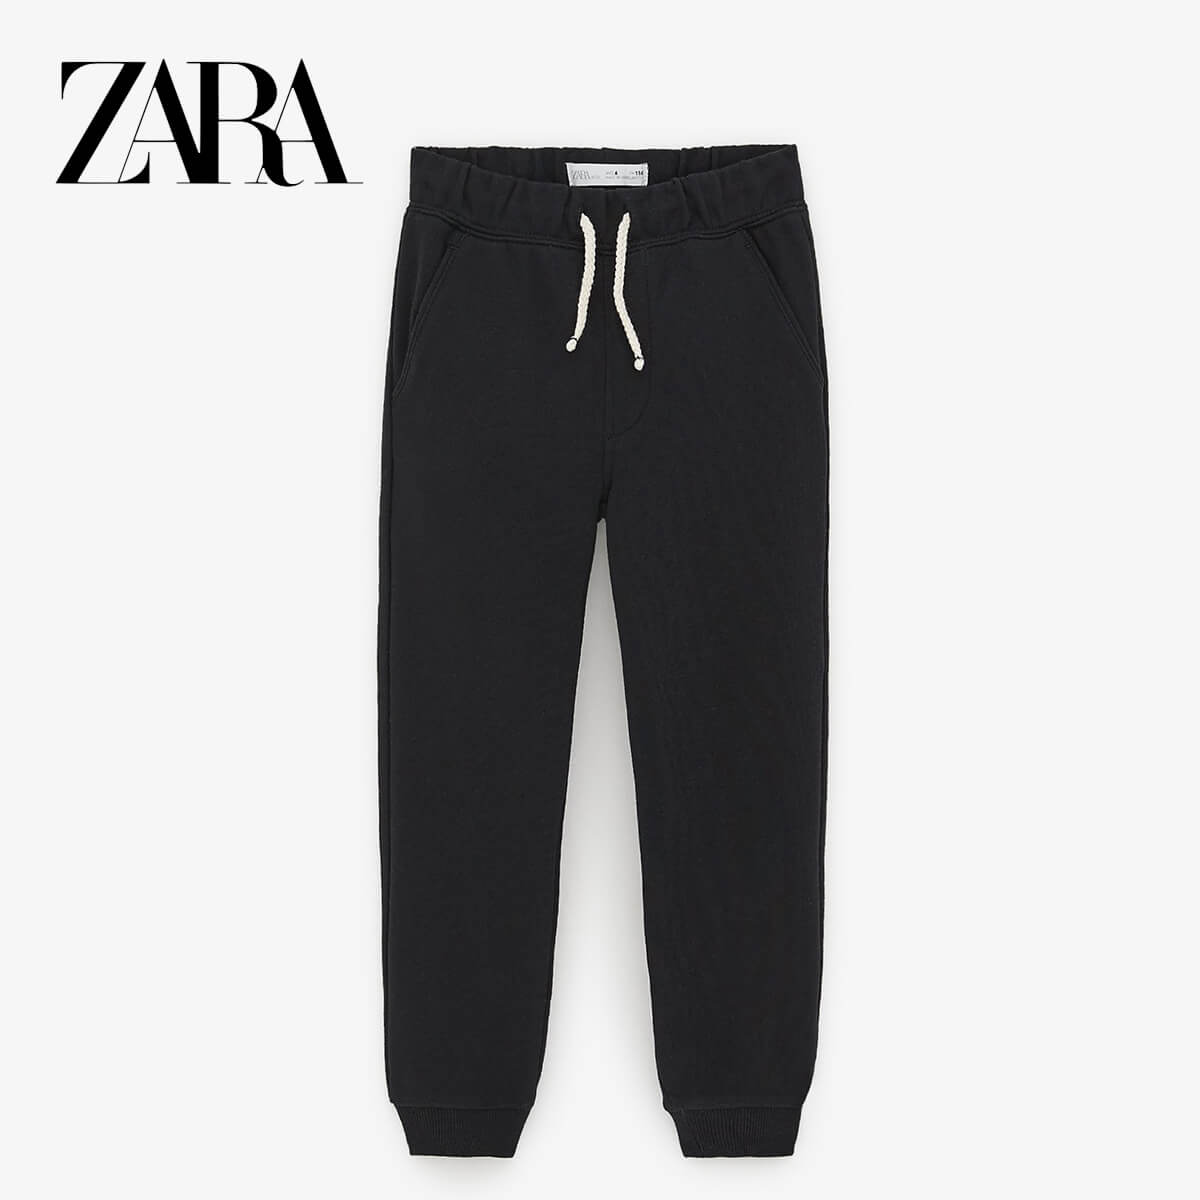 zara boys pants